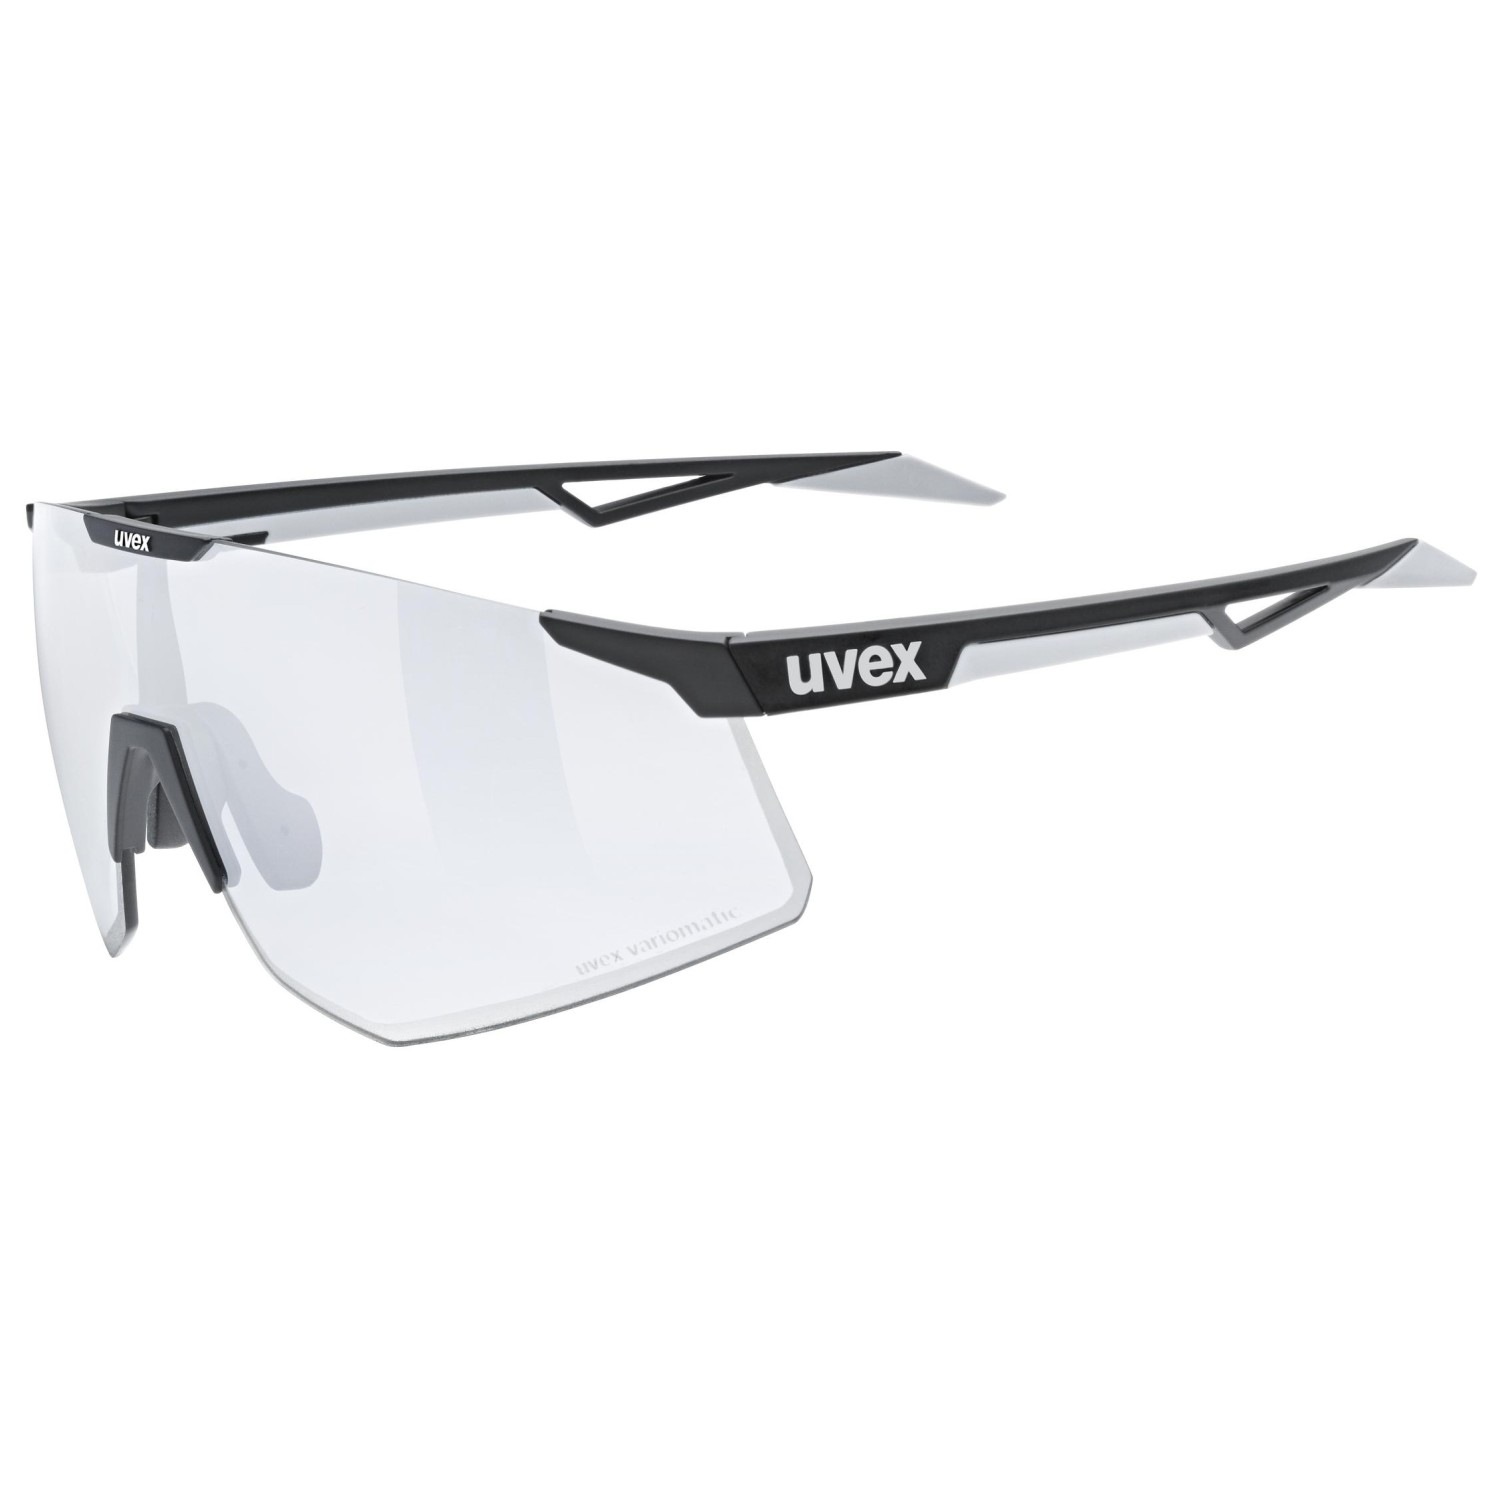 Велосипедные очки Uvex Pace Perform S V Litemirror Cat 1, цвет Black Matt